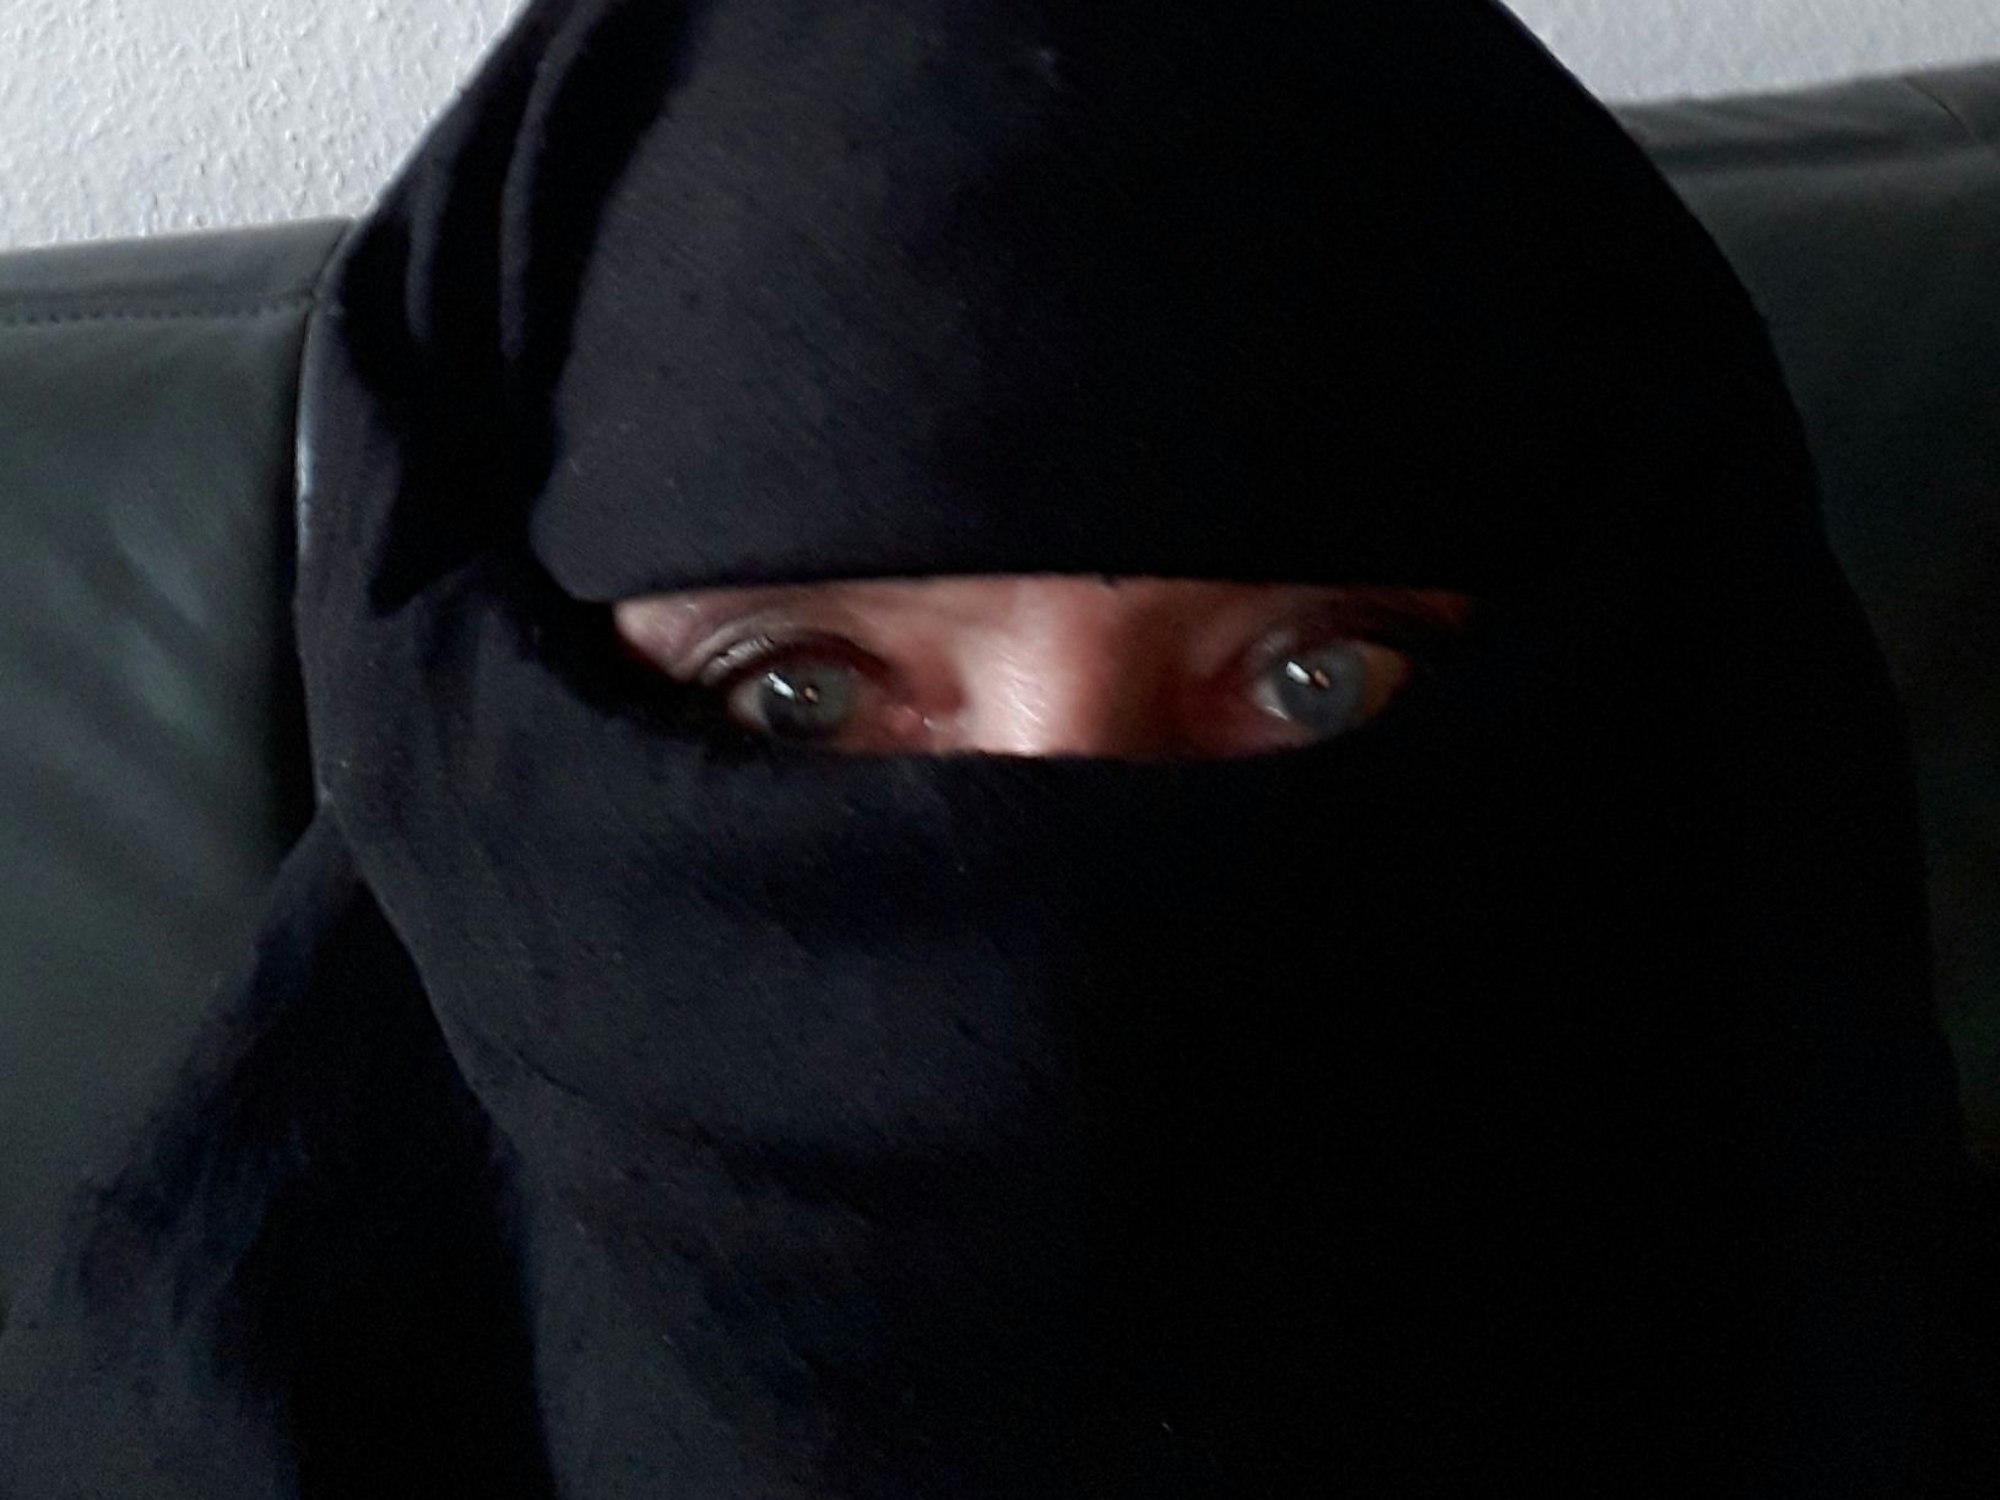 Frau mit Burka. Das Gesicht ist nicht zu erkennen.